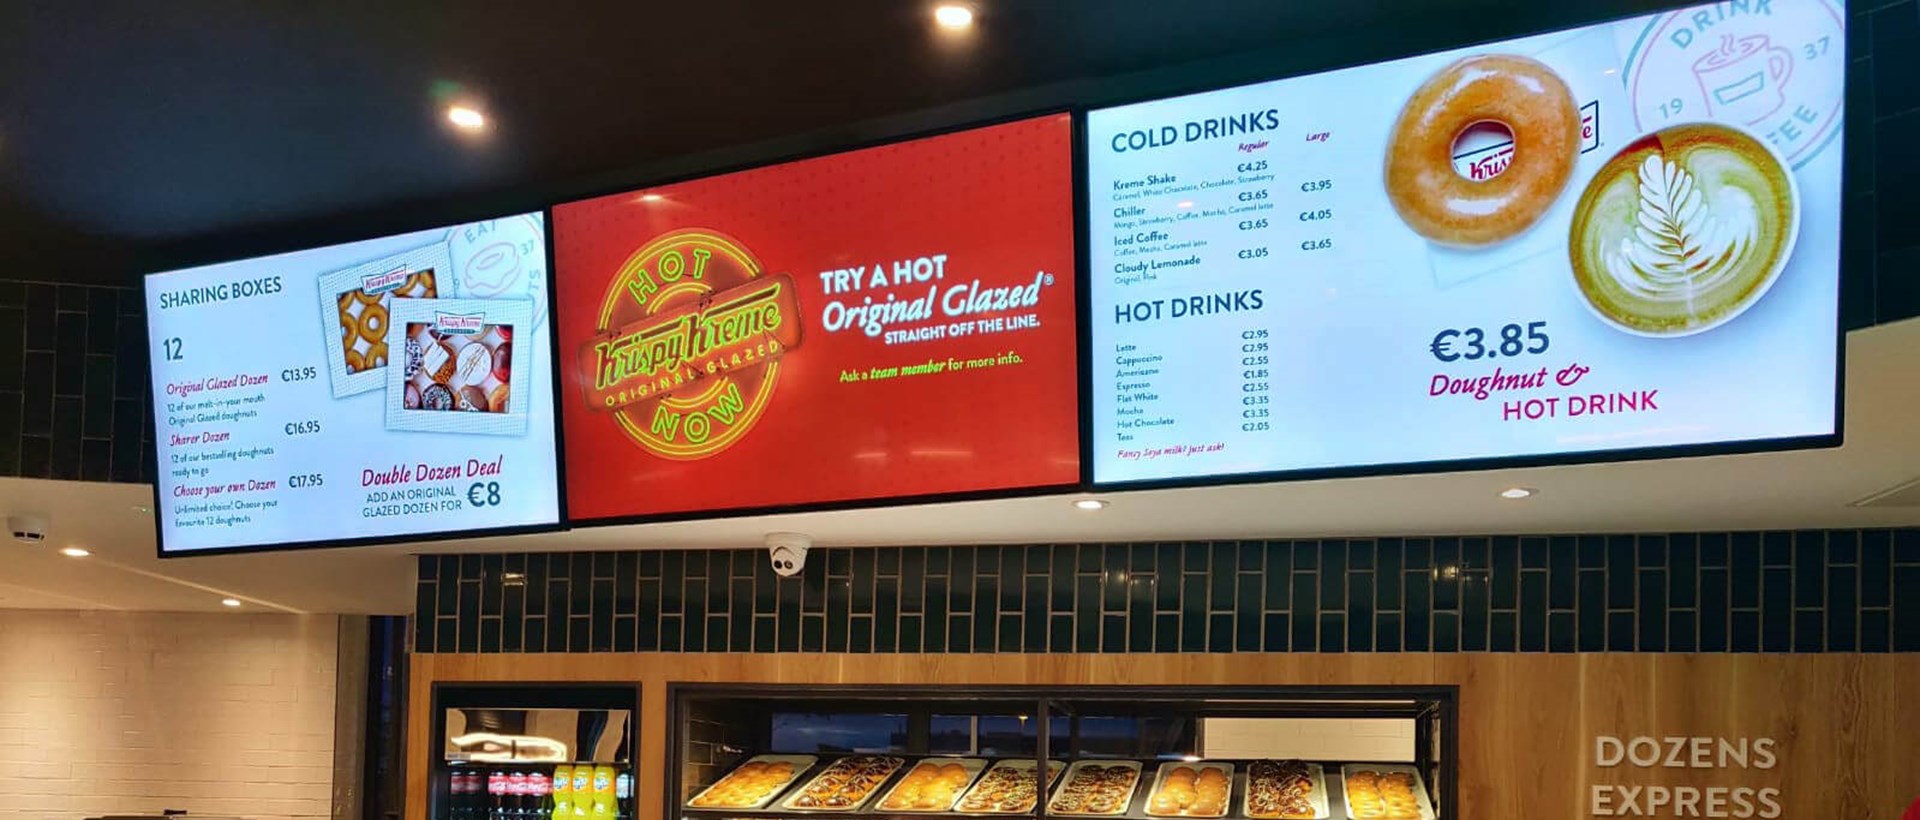 Krispy Kreme Digital Menu Display